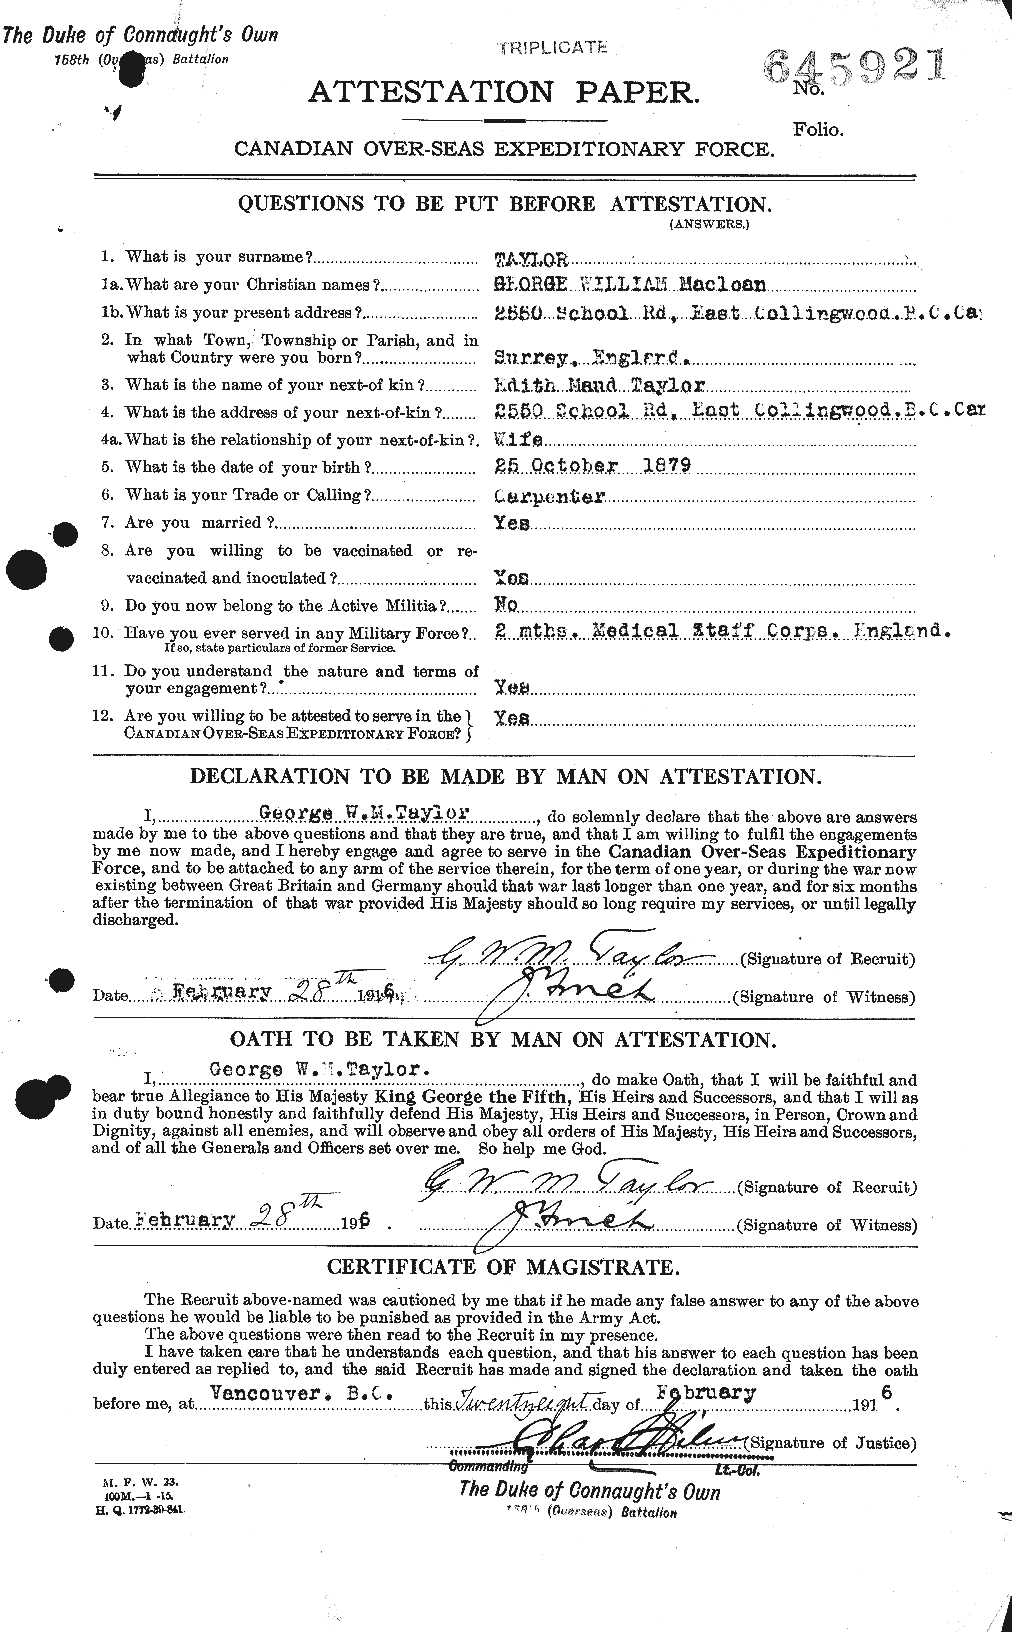 Dossiers du Personnel de la Première Guerre mondiale - CEC 626372a